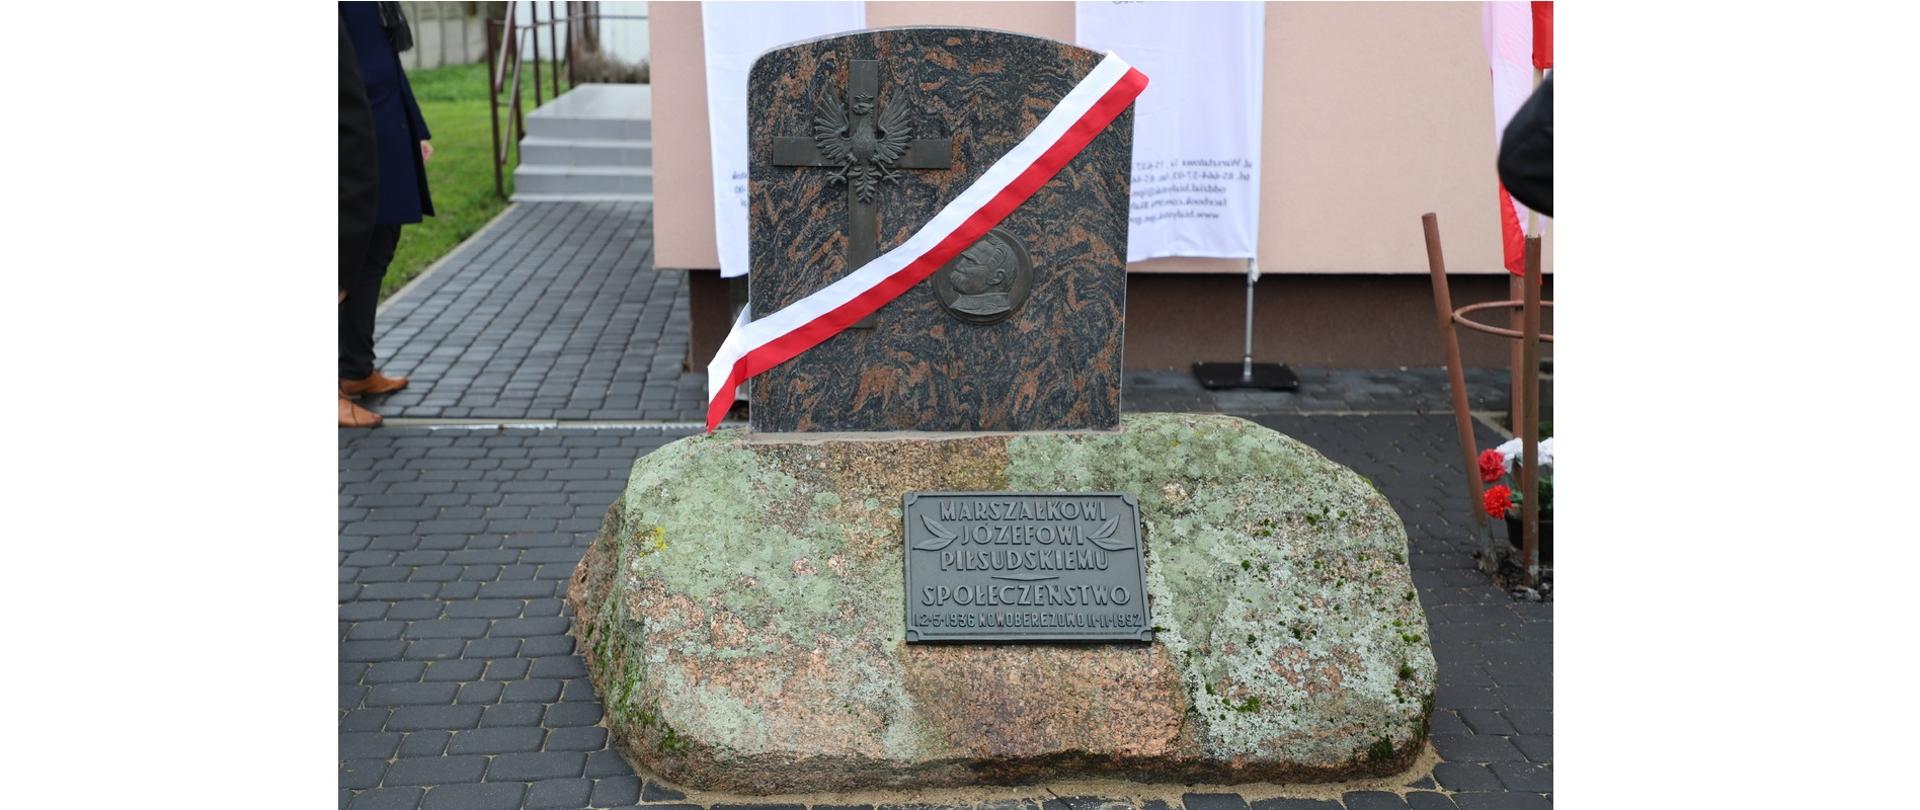 Przed budynkiem stoi pomnik. Na kamieniu znajduje się tablica z napisem " Marszałkowi Józefowi Piłsudskiemu Społeczeństwo. Nad kamieniem jest tablica granitowa z podobizna Józefa Piłsudskiego obok krzyż i orzeł.